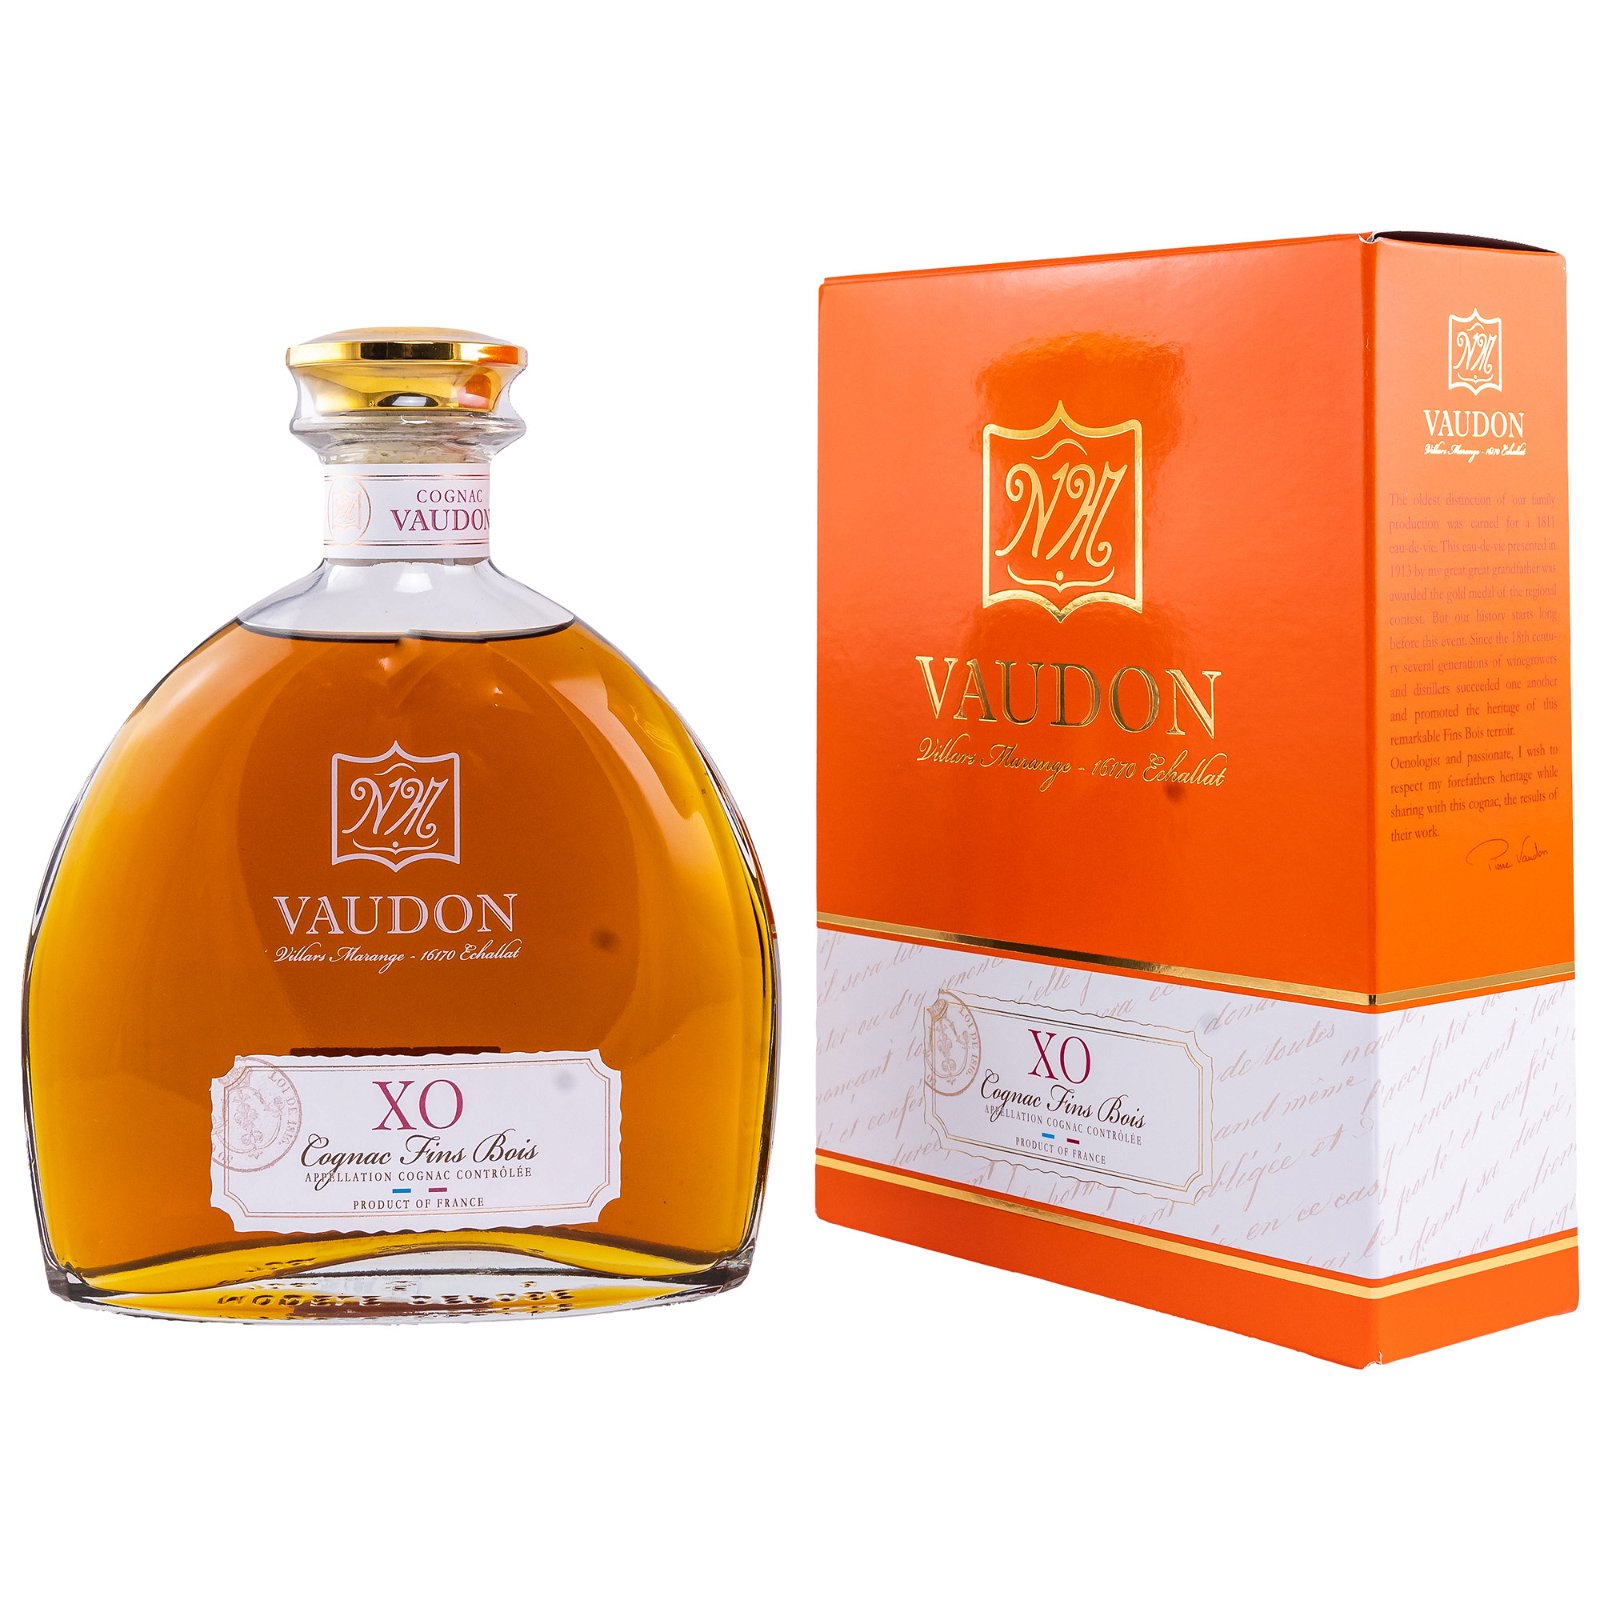 Vaudon XO Cognac Fins Bois